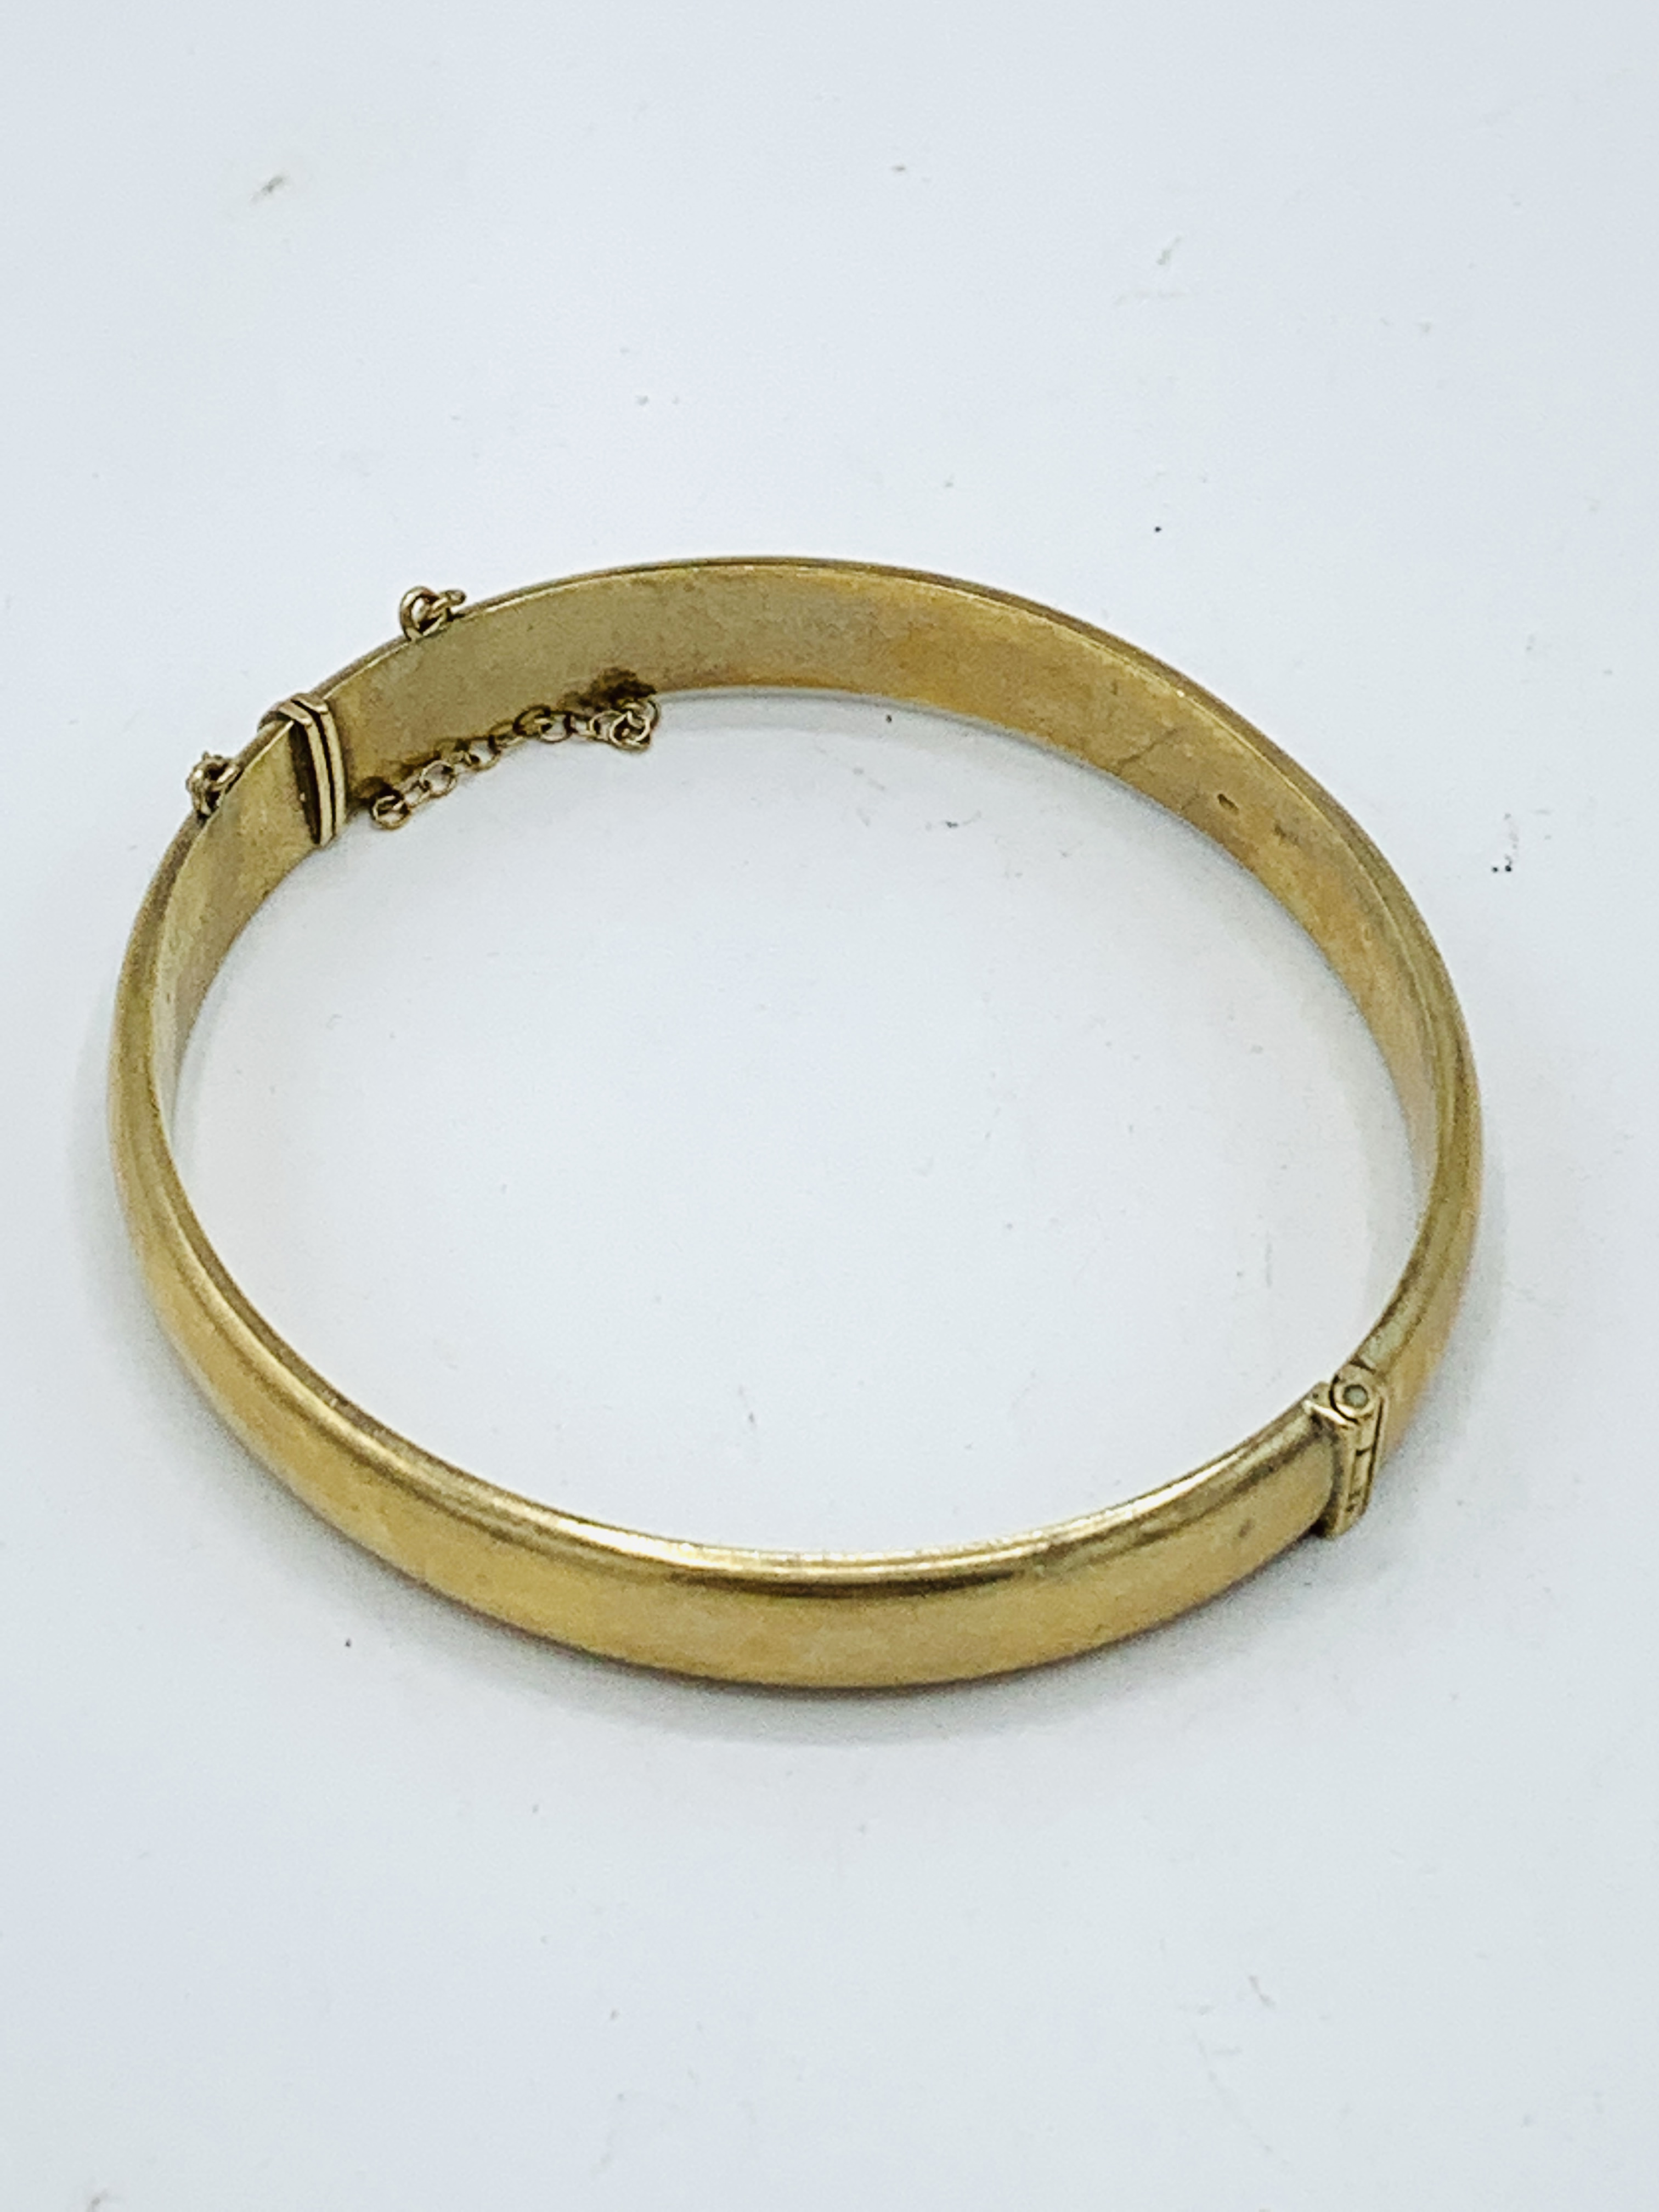 9ct gold plain bracelet